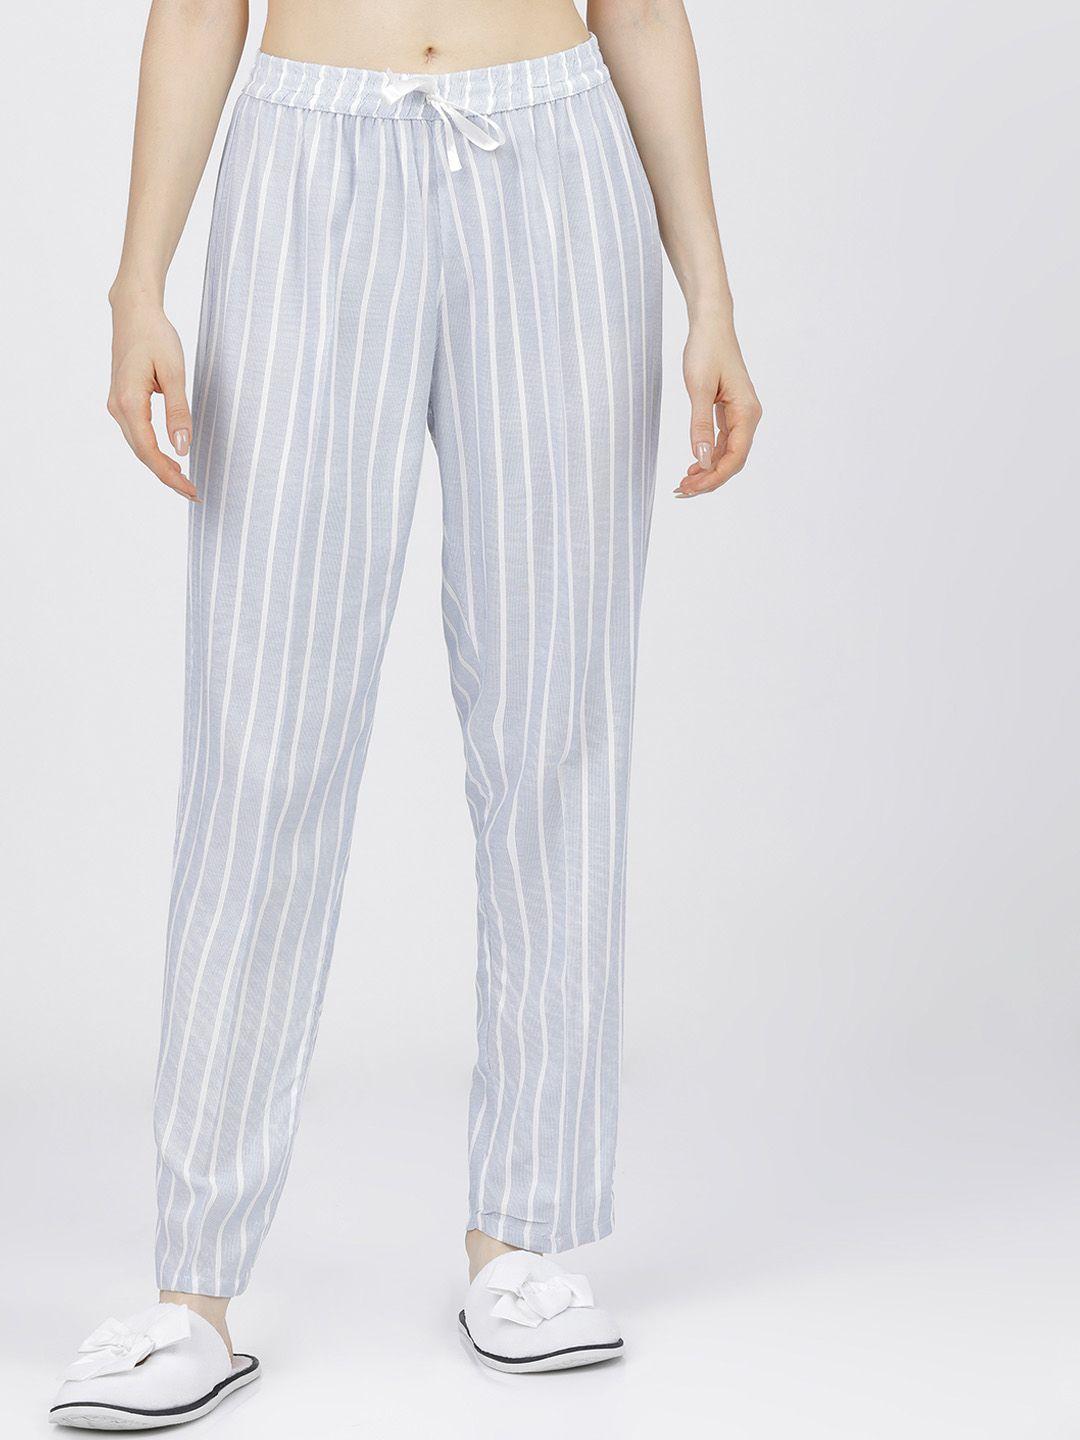 tokyo talkies women blue & white striped lounge pants